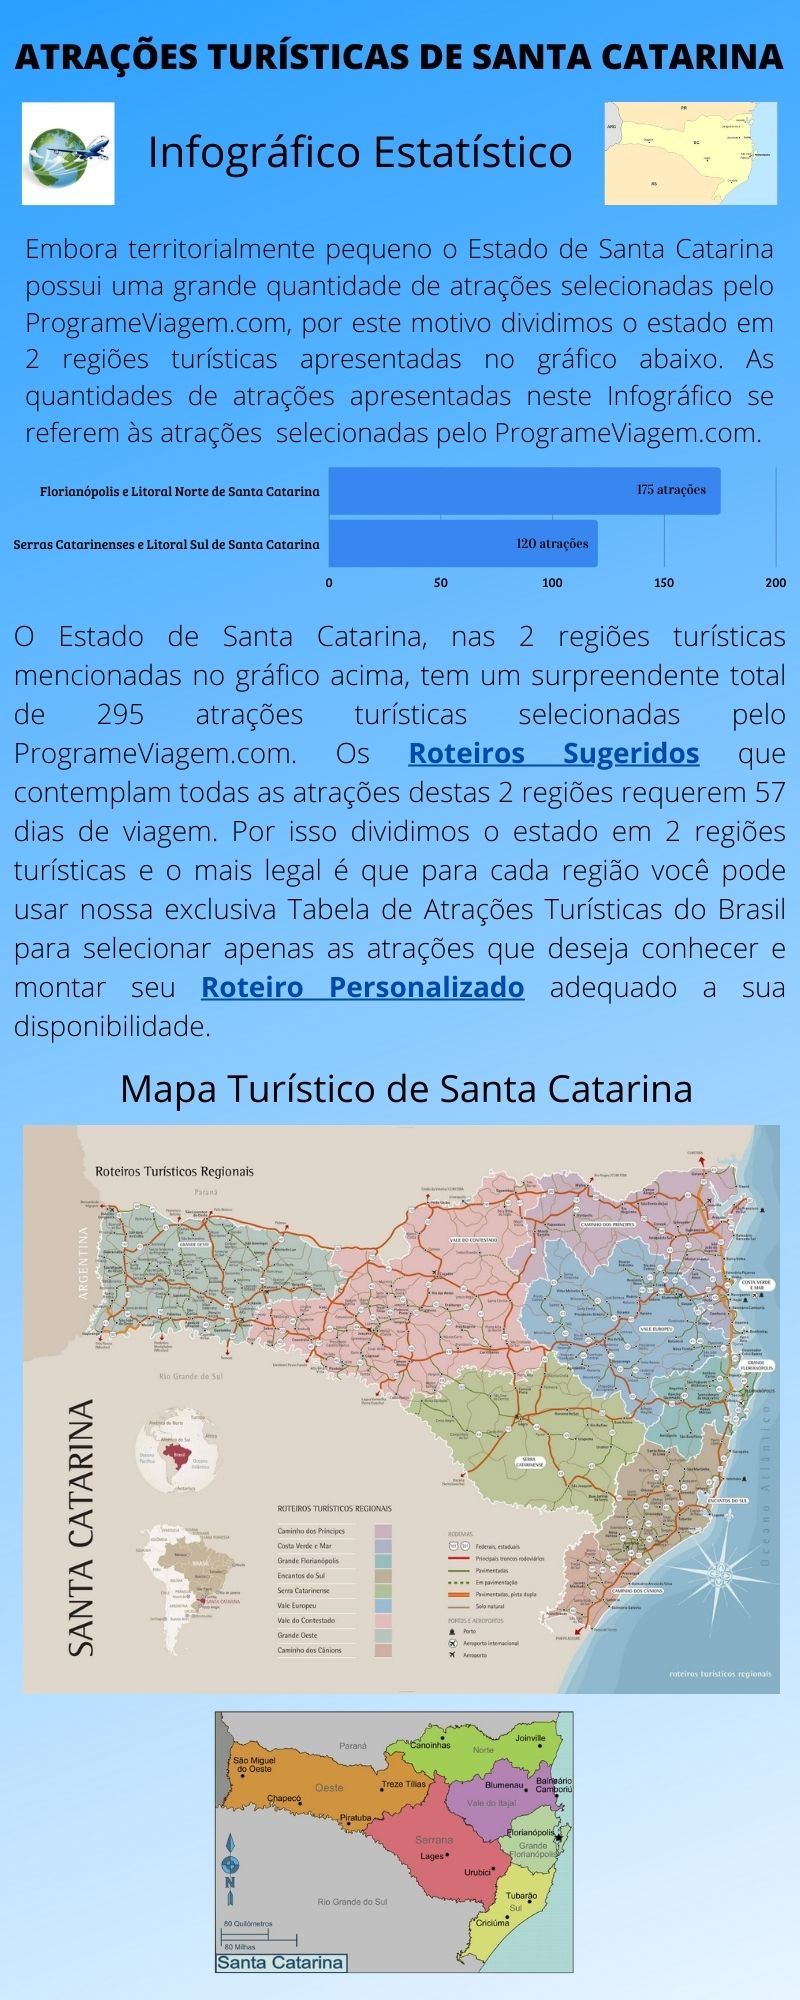 Infográfico Atrações Turísticas de Santa Catarina